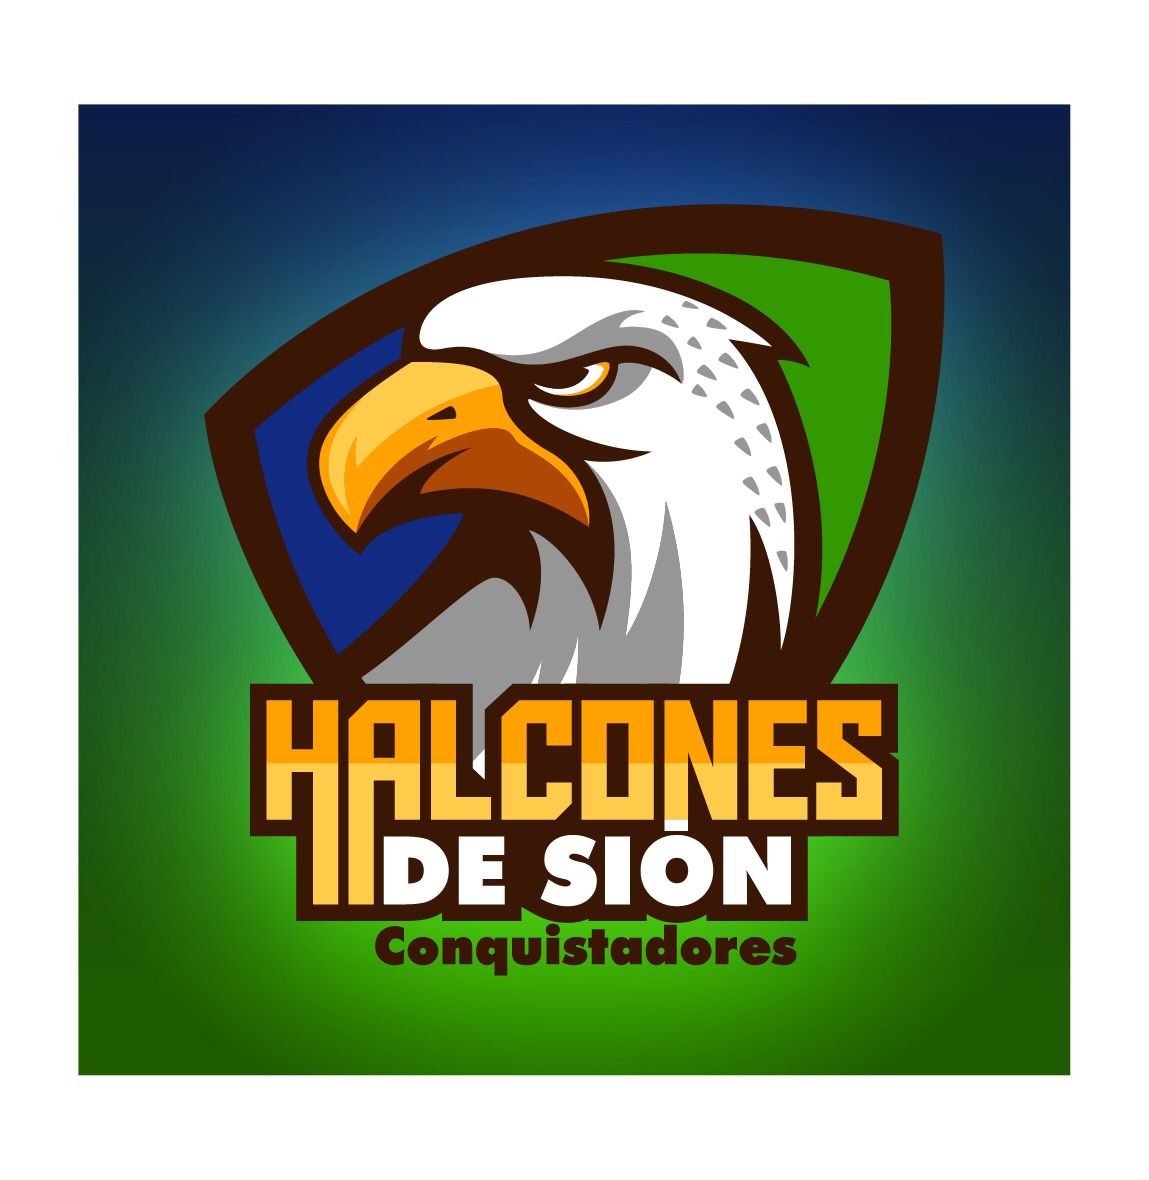 HALCONES DE SION